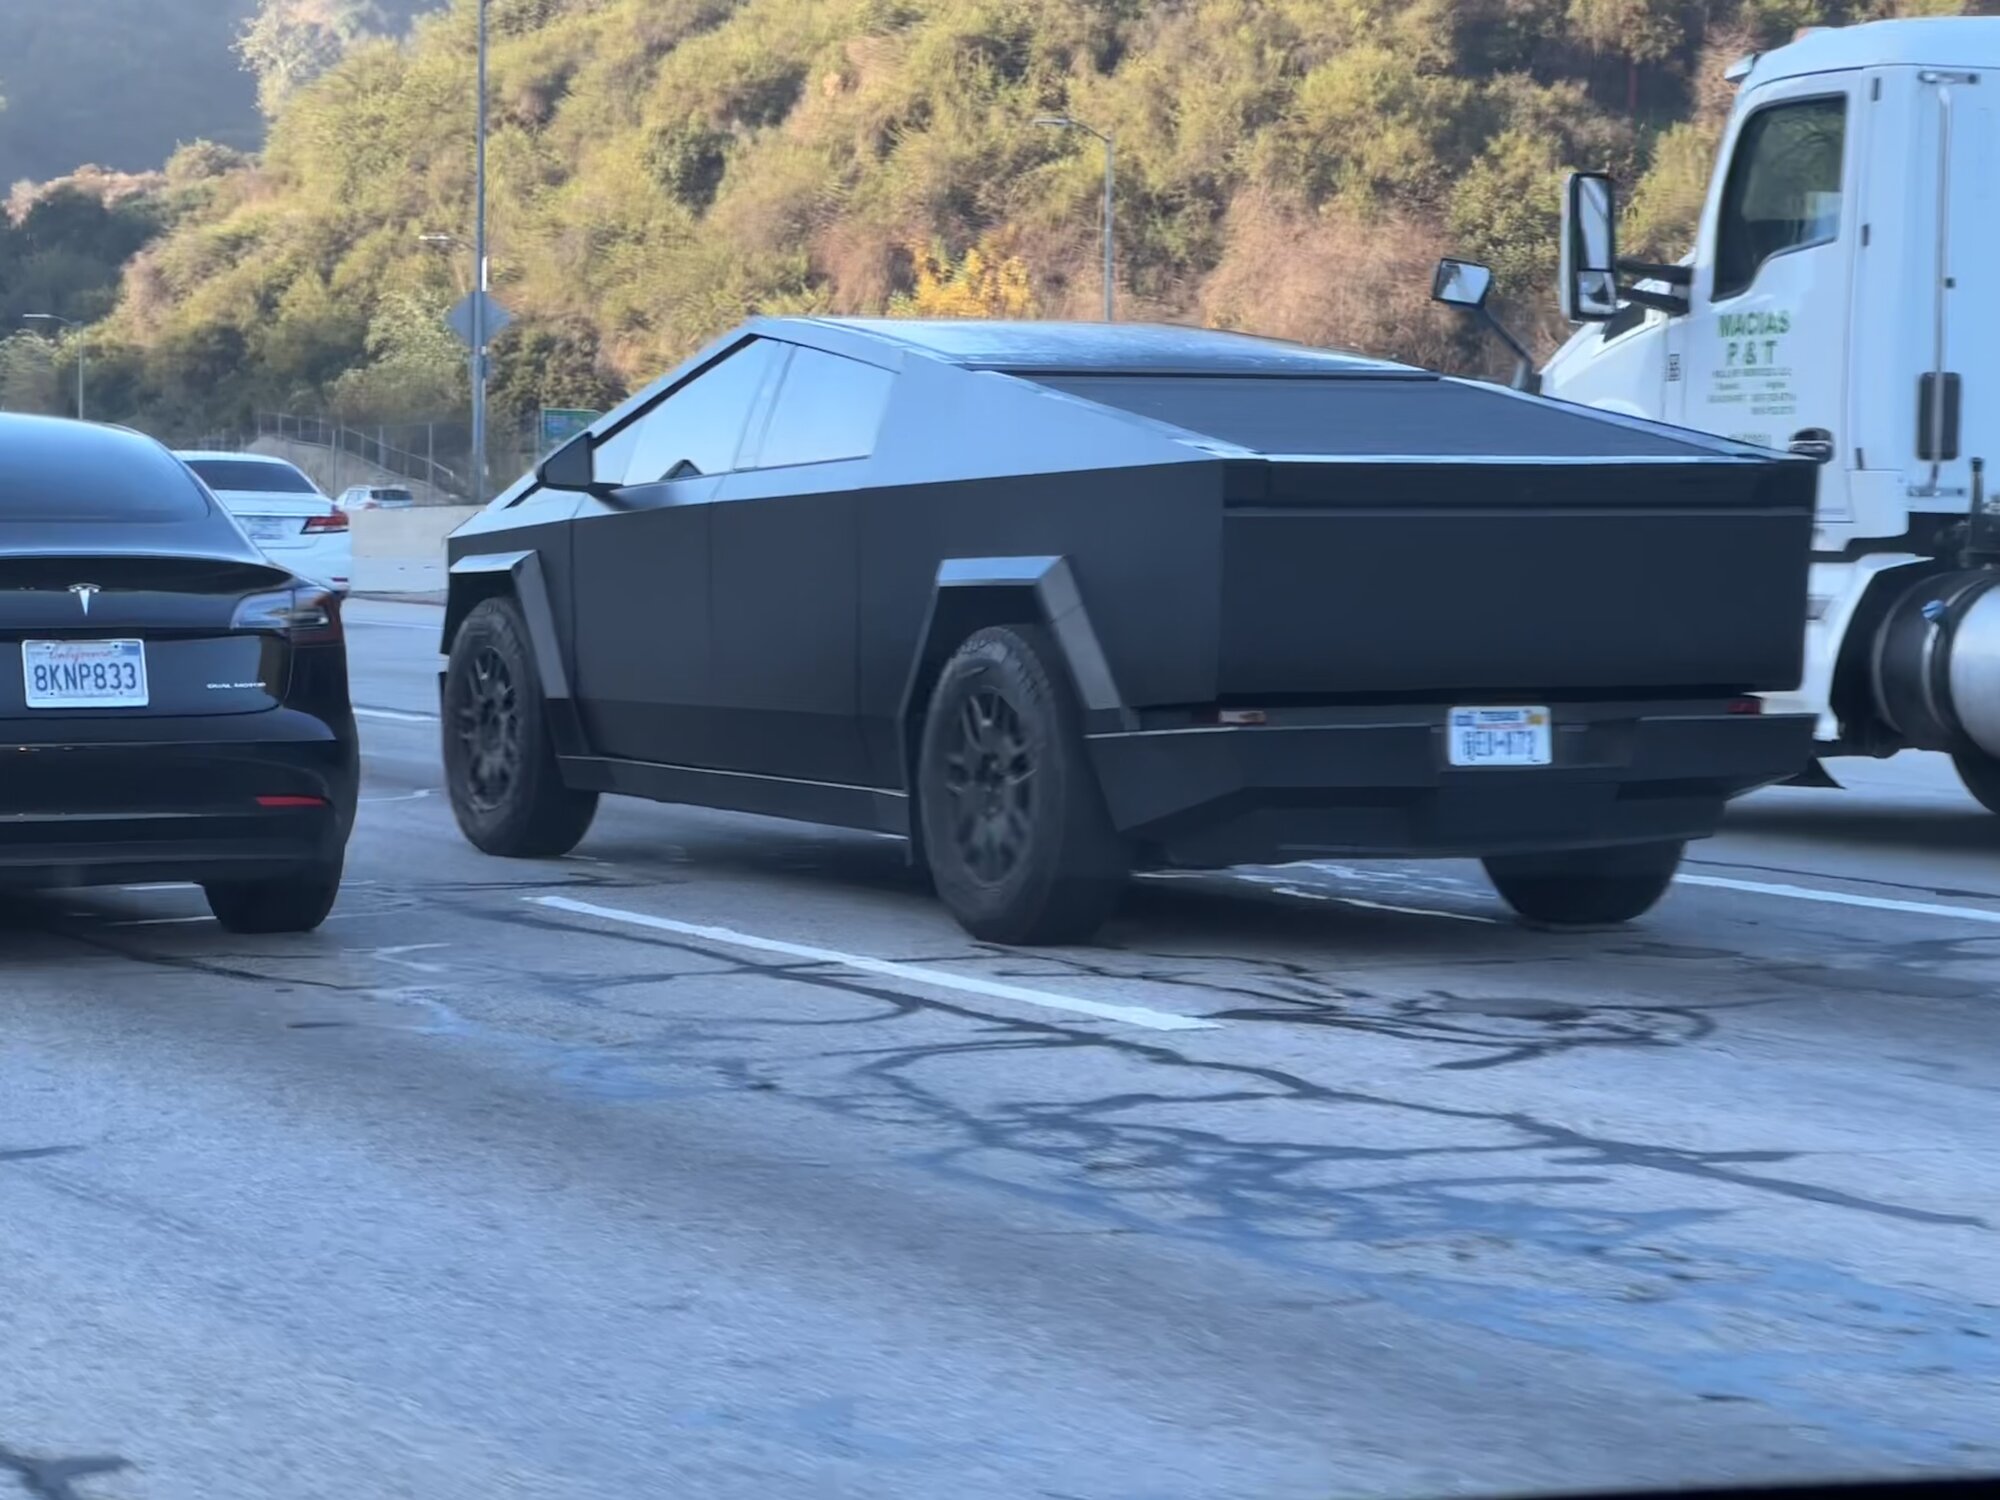 Cybertruck Spotted LA (405 Freeway) | Tesla Motors Club